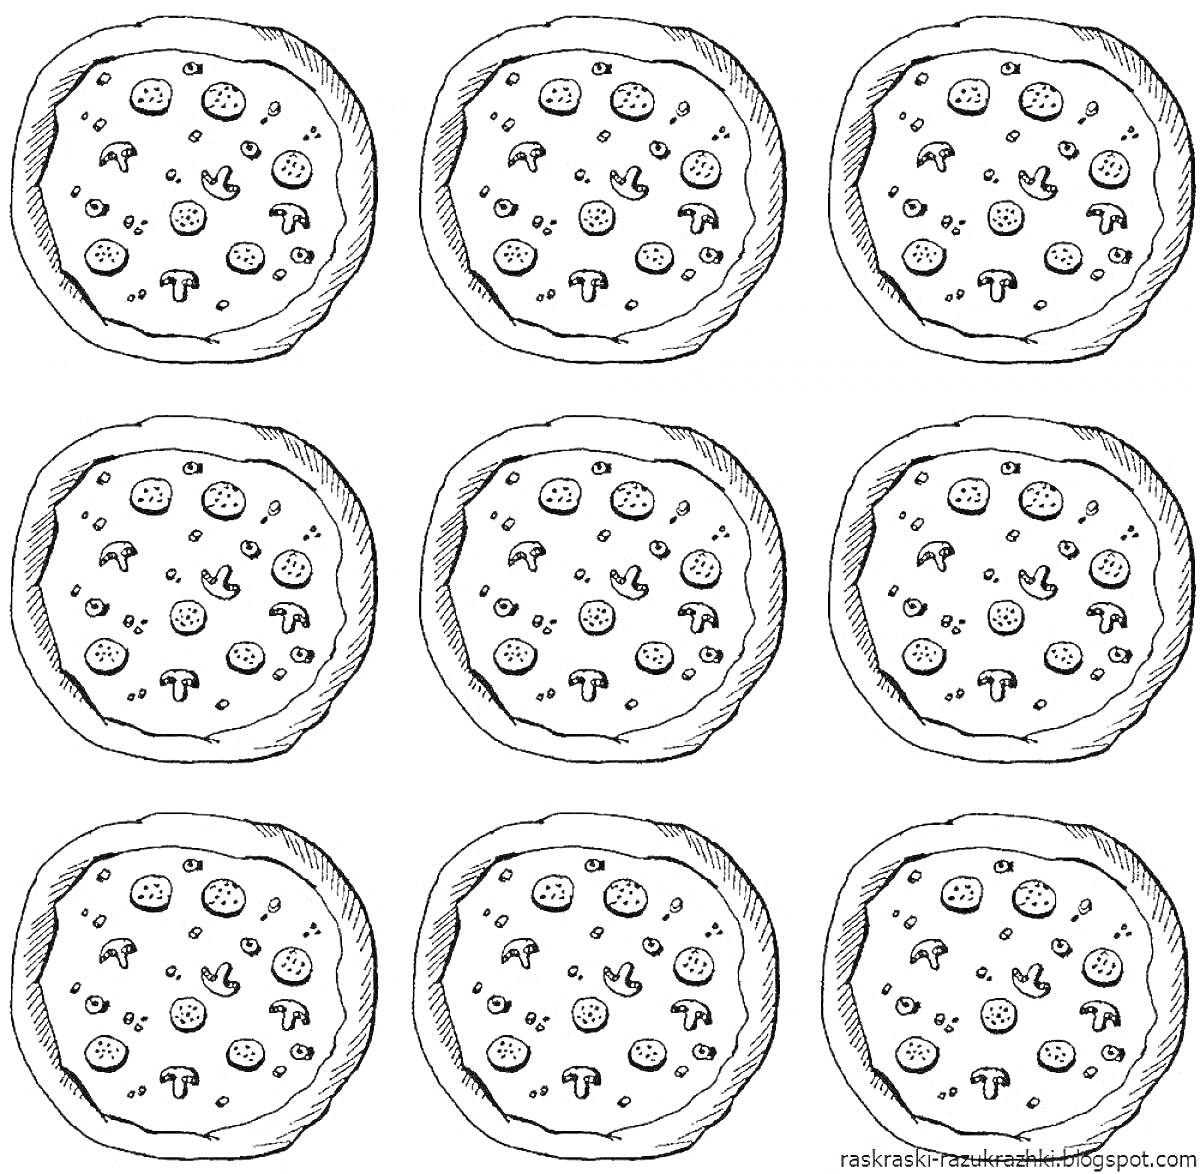 Раскраска Раскраска с девятью пиццами, содержащими кусочки колбасы, ломтики грибов, кусочки оливок и кусочки перца